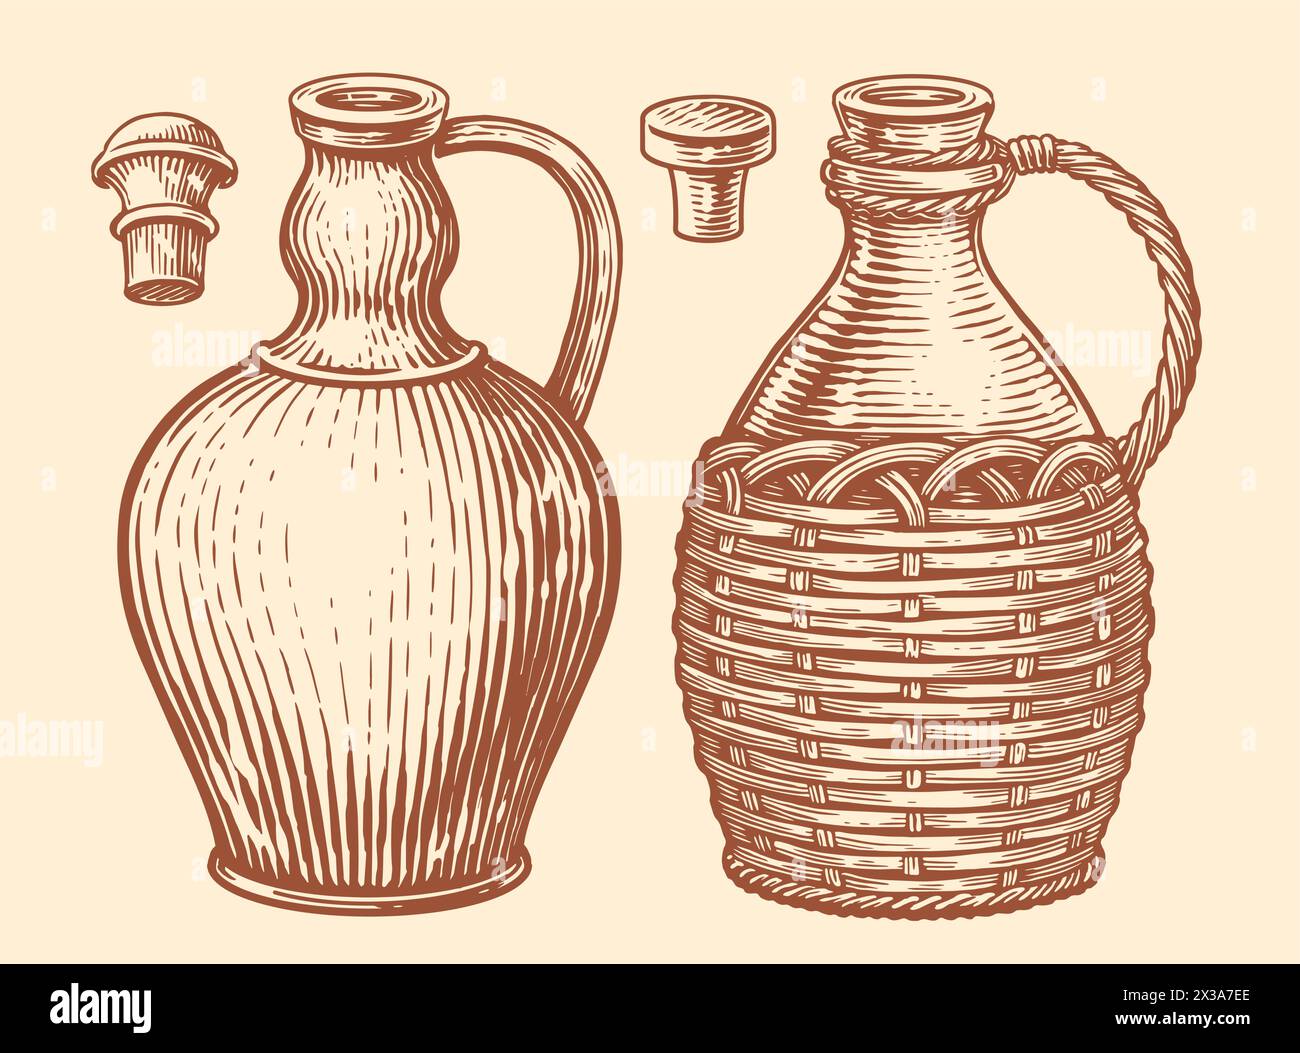 Tongefäße für Wein und Öl. Handgezeichnete Skizze Vintage Vektor Illustration Stock Vektor